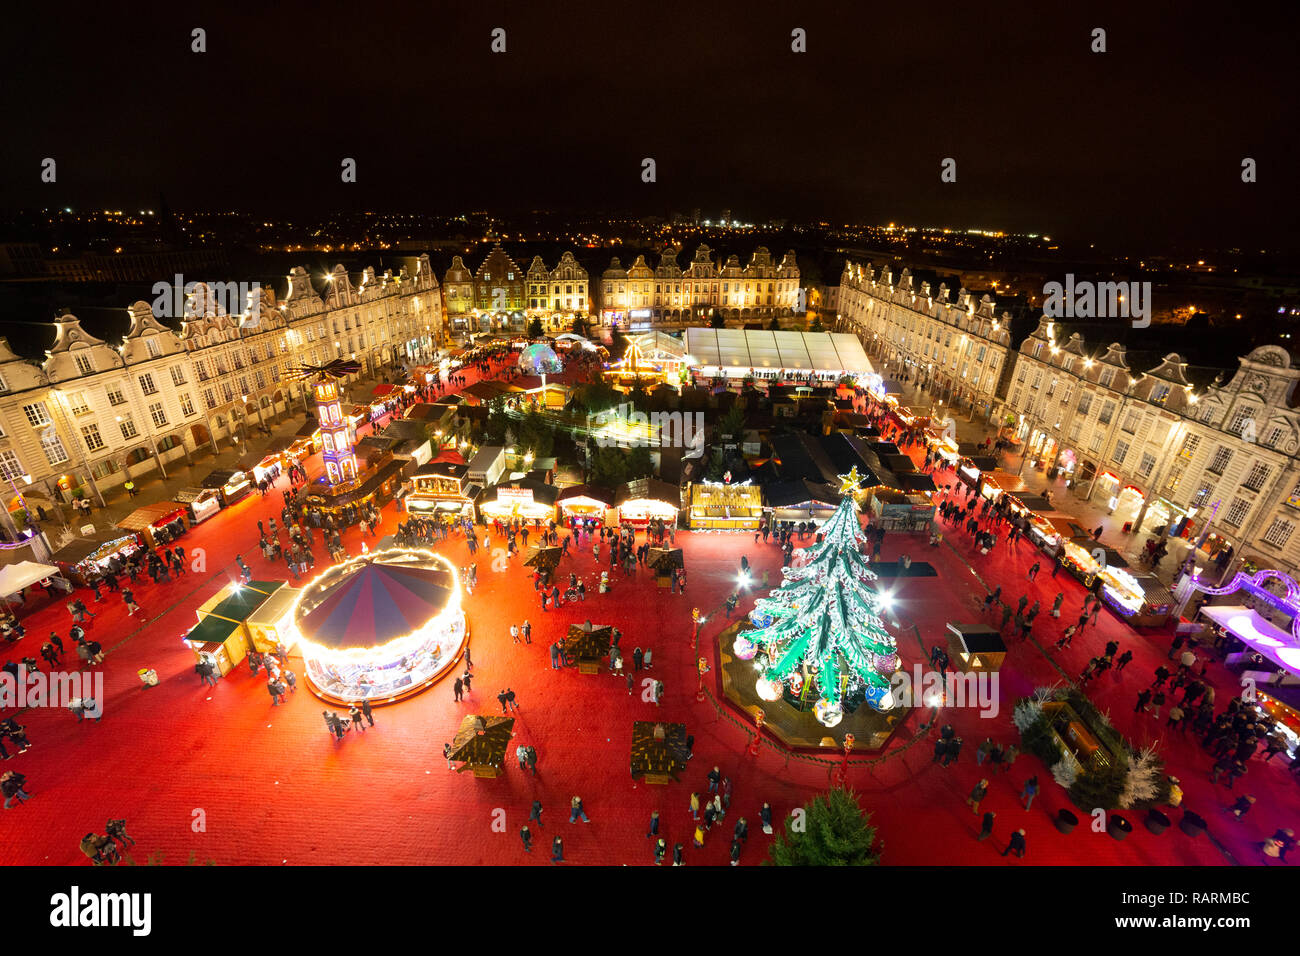 Il mercato di Natale (Marché de Noël) in Arras, Francia. Il mercato è il più grande nella regione e trattenuto sulla Grand Place. Foto Stock